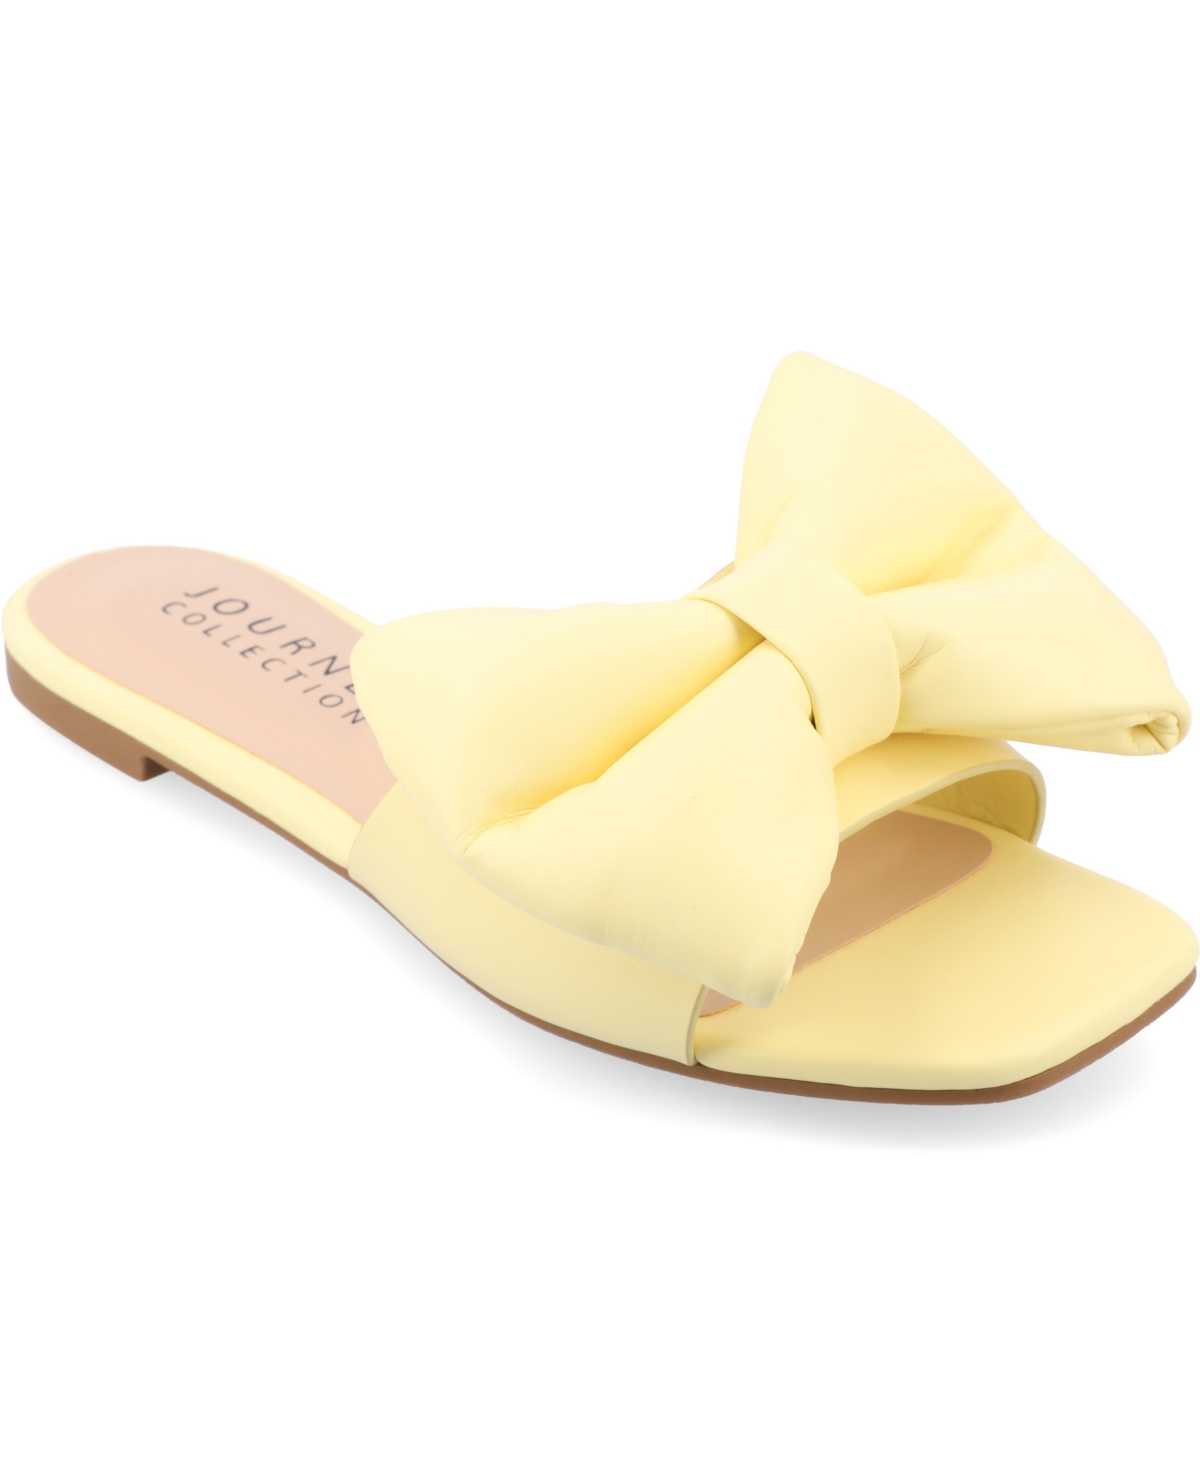 Women's Fayre Wide Width Oversized Bow Slip On Flat Sandals - Yellow